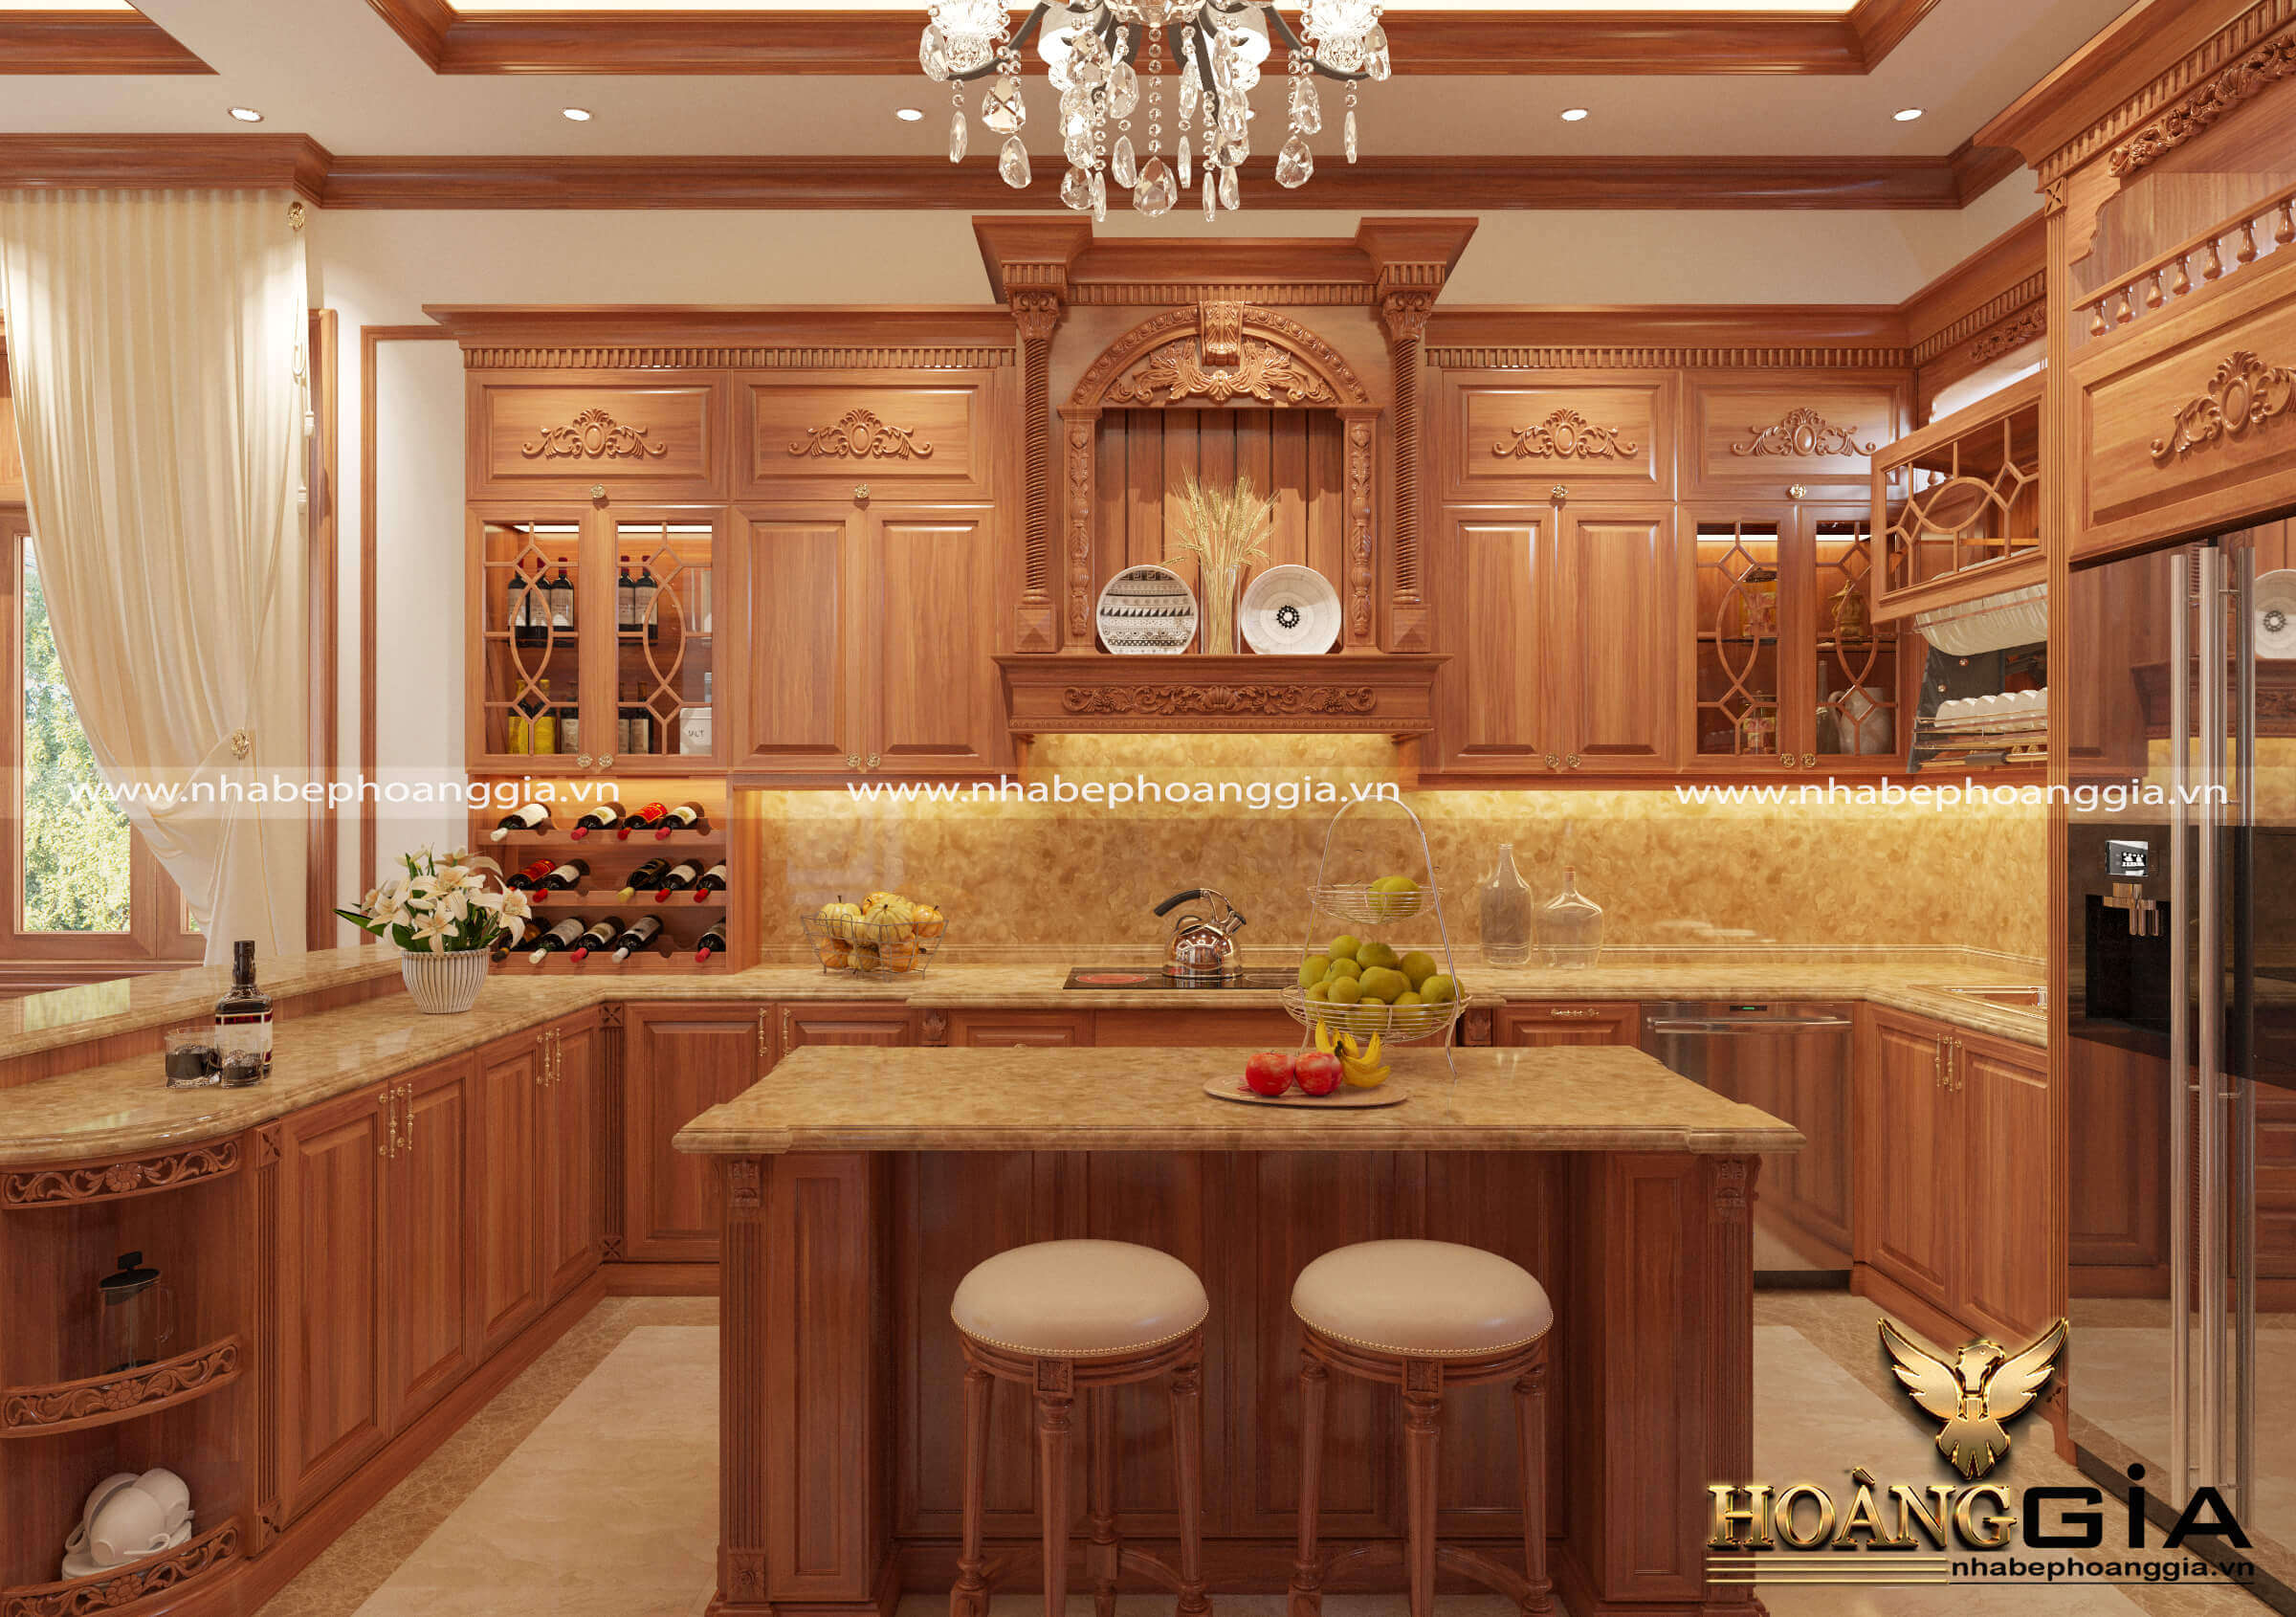 Thiết kế tủ bếp gỗ gõ đỏ phong cách tân cổ điển đã trở thành xu hướng trong năm